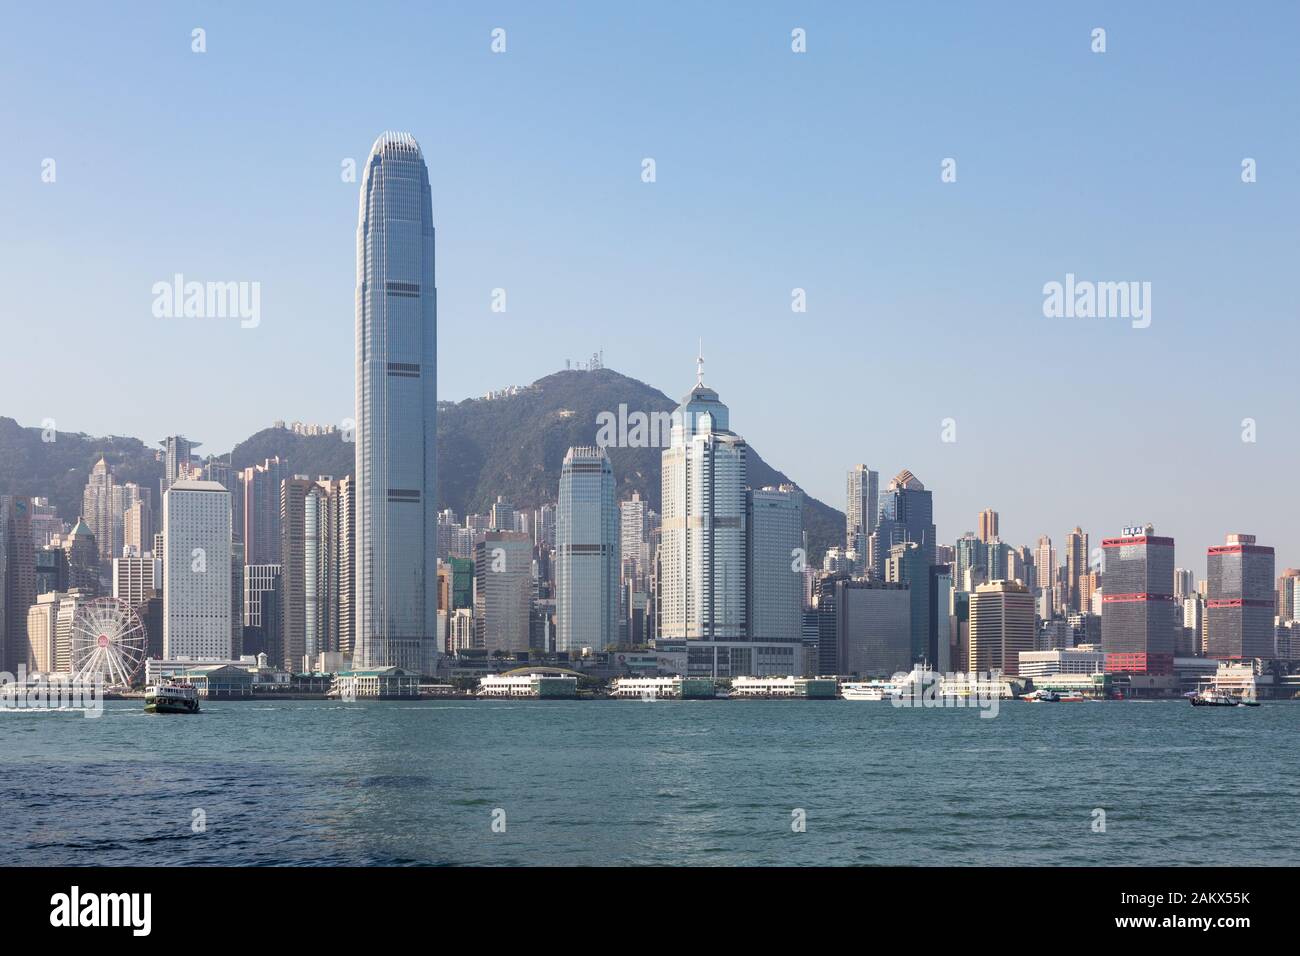 Skyline von Hongkong - Hong Kong Island einschließlich des Wolkenkratzers International Finance Center Two (2 IFC), Hong Kong Harbour, Hong Kong Asia Stockfoto